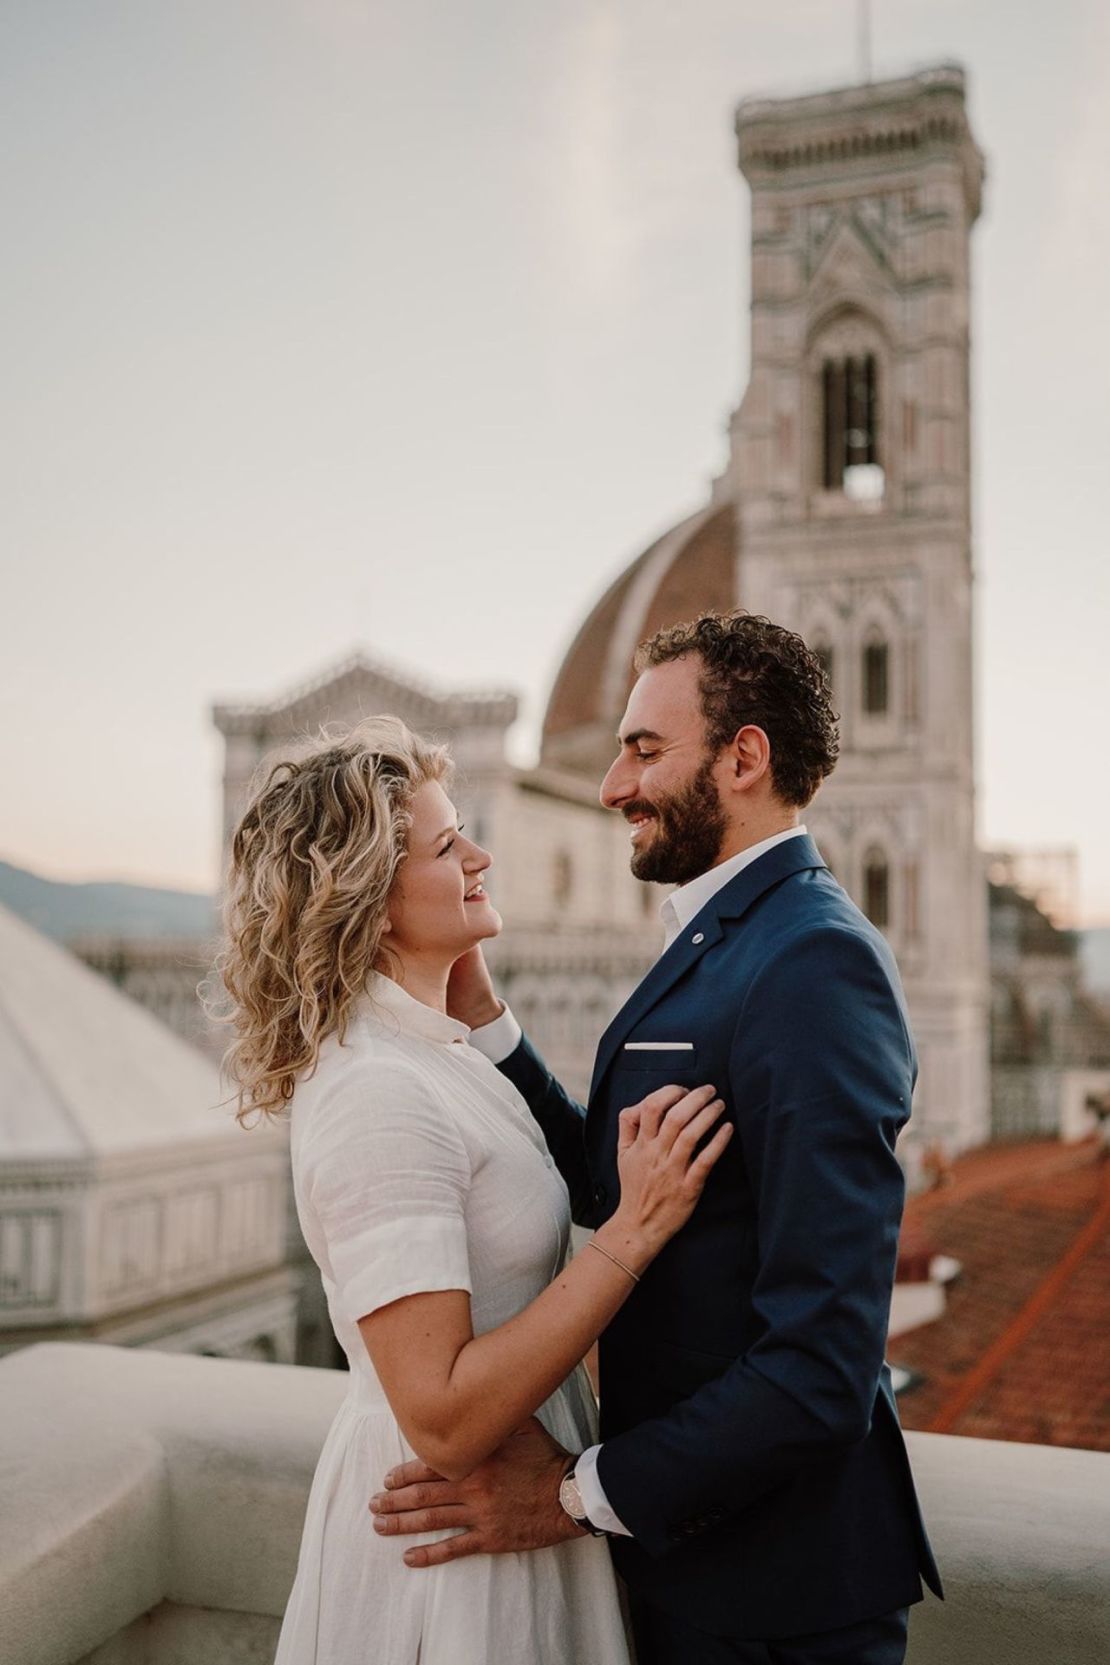 Han pasado cinco años desde que Kacie y Dario se conocieron en Florencia y ahora viven allí juntos.Crédito: Jamie Lee @JamieInItalyPhoto/JamieInItaly.com